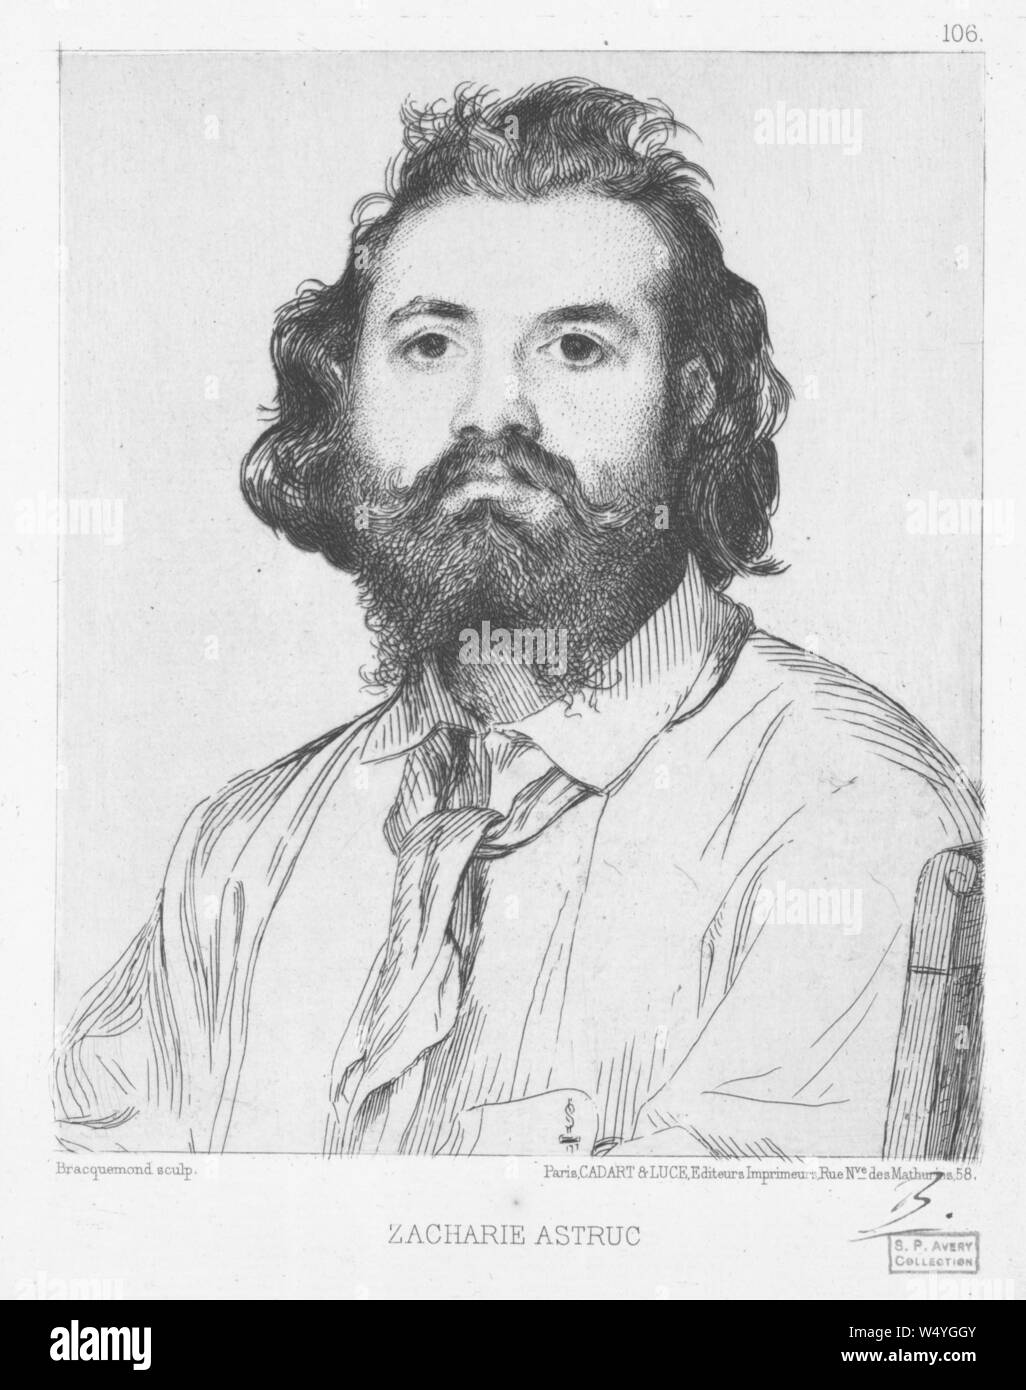 Portrait gravé de Zacharie Astruc, un sculpteur, peintre et poète, illustré par Henri Félix Bracquemond, 1865. () Banque D'Images